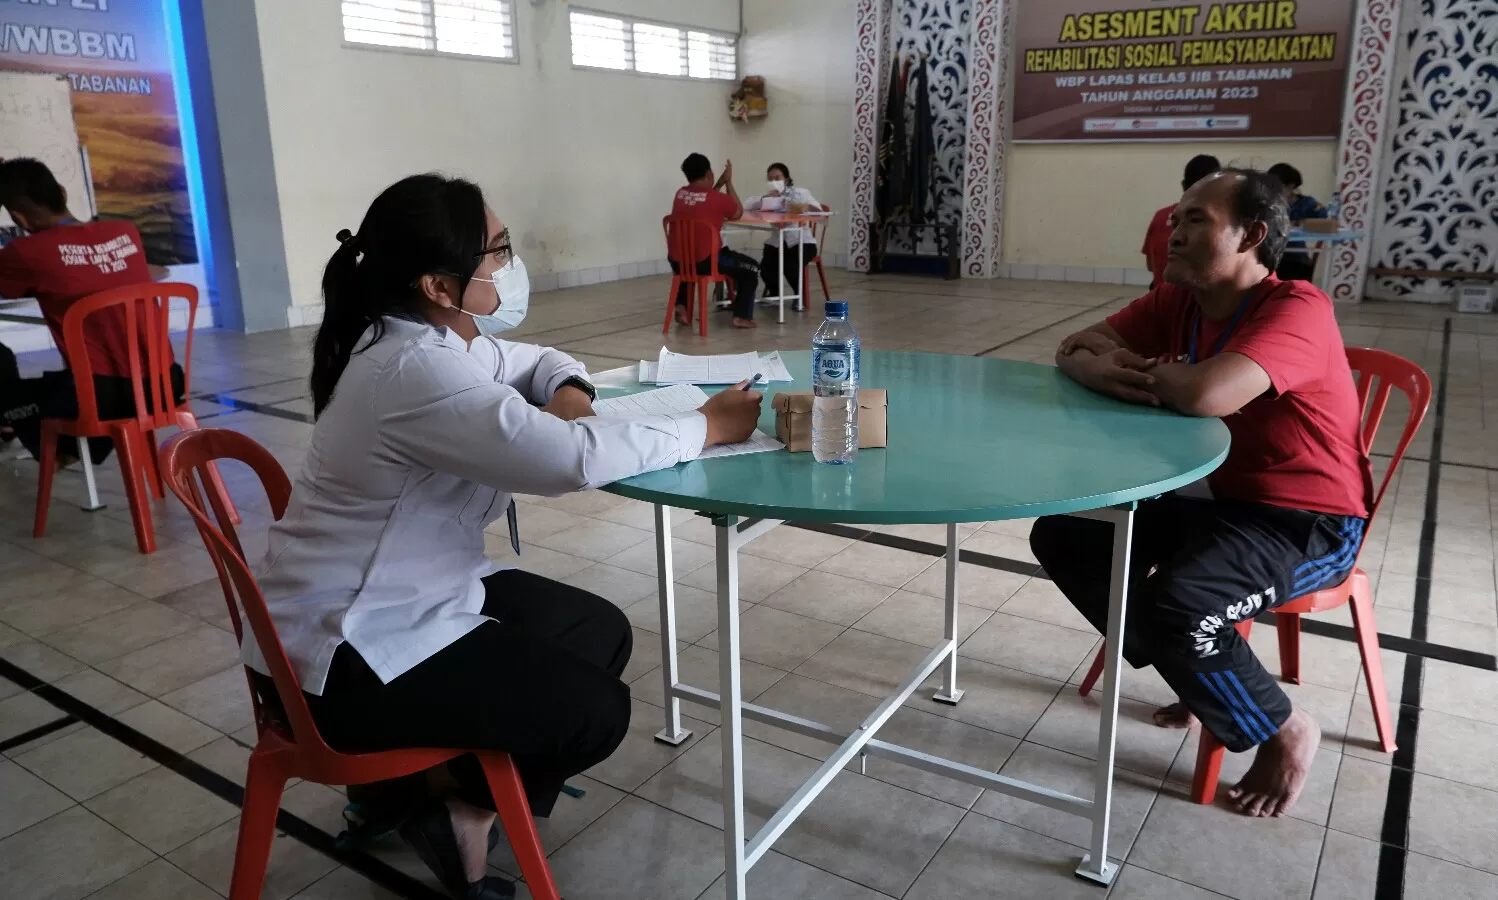 LAPAS Kelas IIB Tabanan melaksanakan kegiatan asesmen akhir bagi para WBP peserta rehabilitasi sosial narkotika, di Aula Candra Prabhawa Lapas Tabanan, Senin (4/9/2023). (posbali.net/ist)